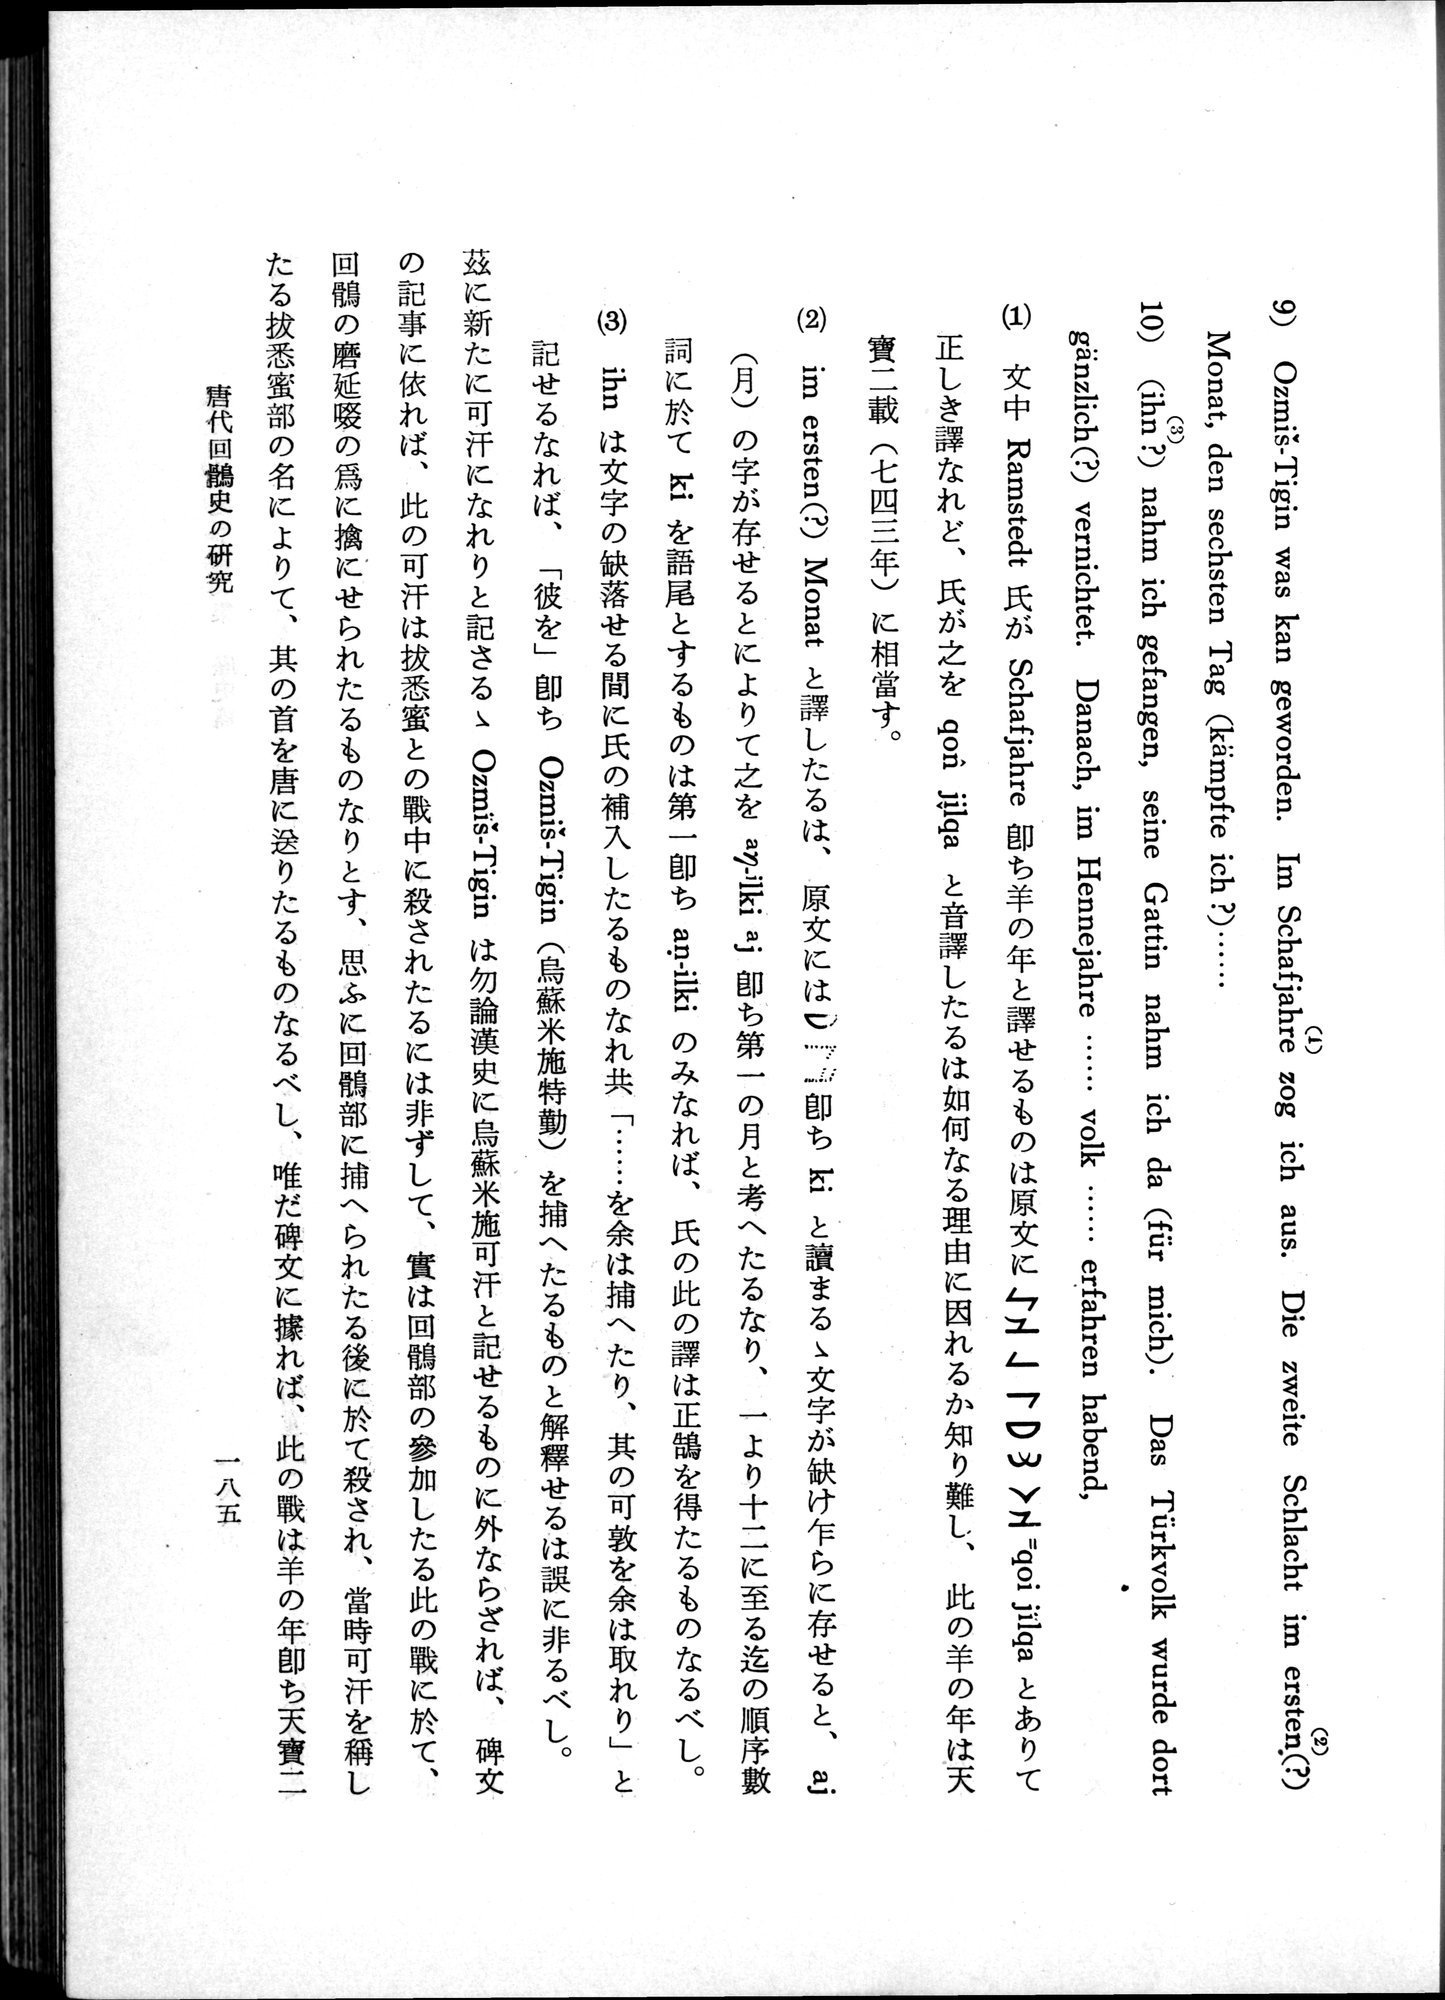 羽田博士史学論文集 : vol.1 / 223 ページ（白黒高解像度画像）